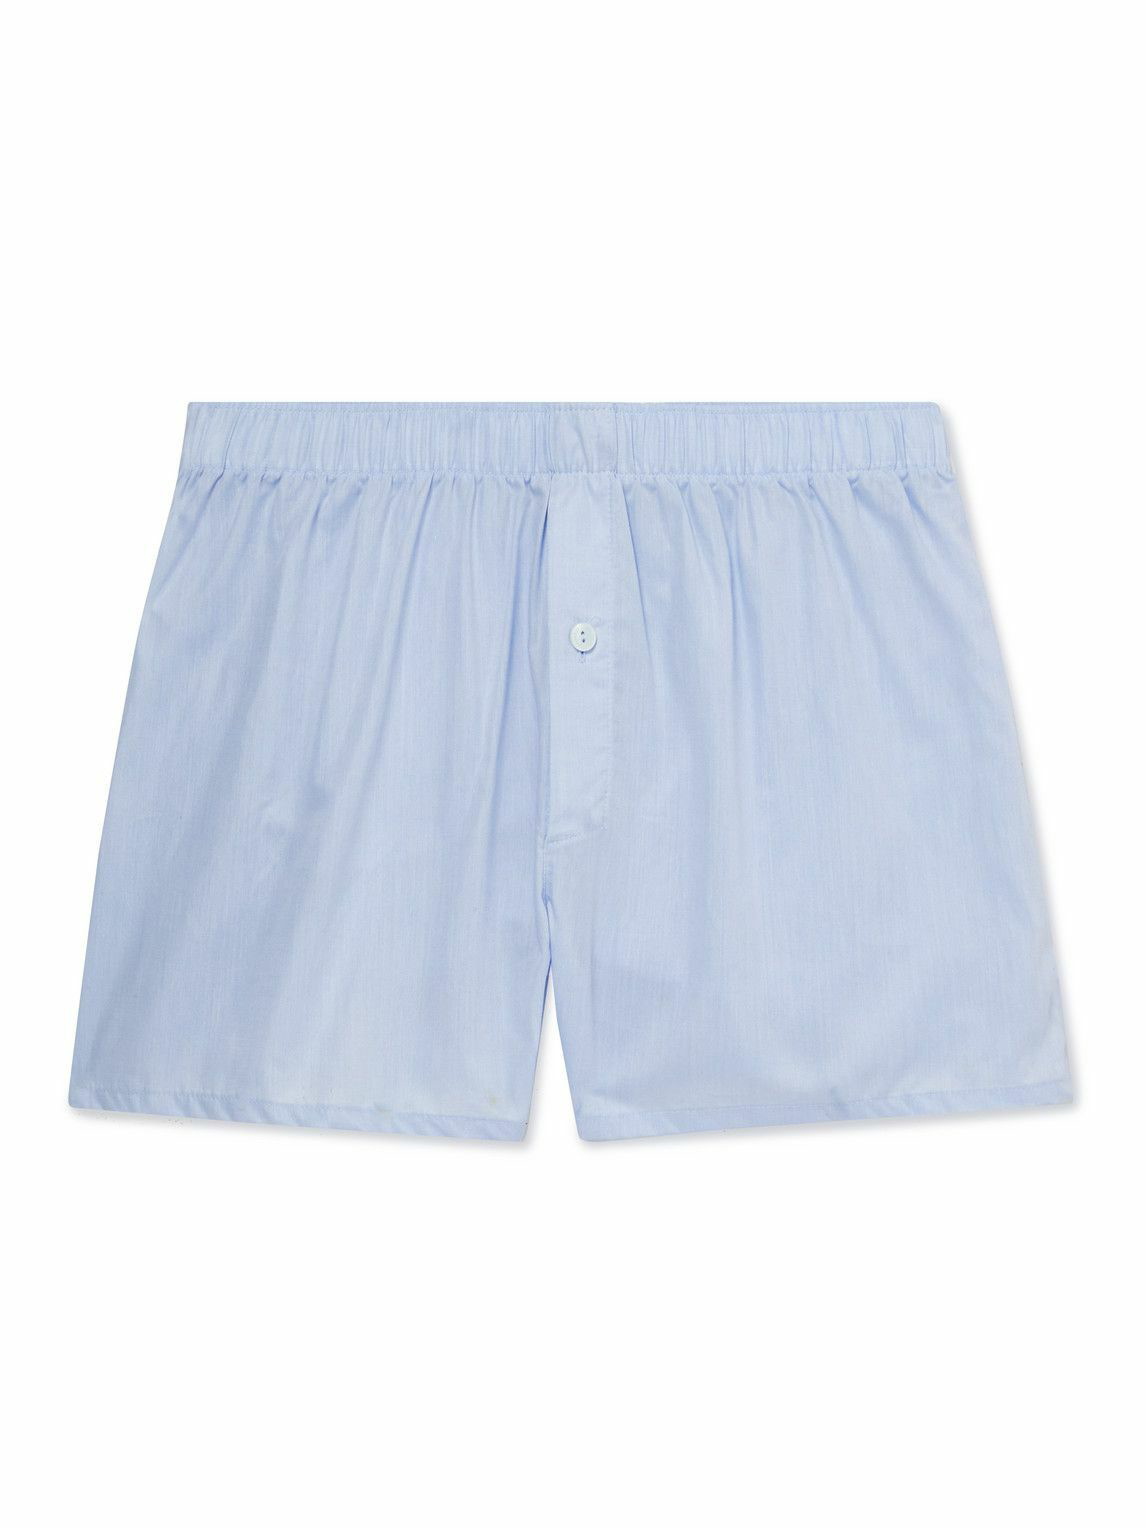 Photo: Hanro - Mercerised Cotton Boxer Shorts - Blue